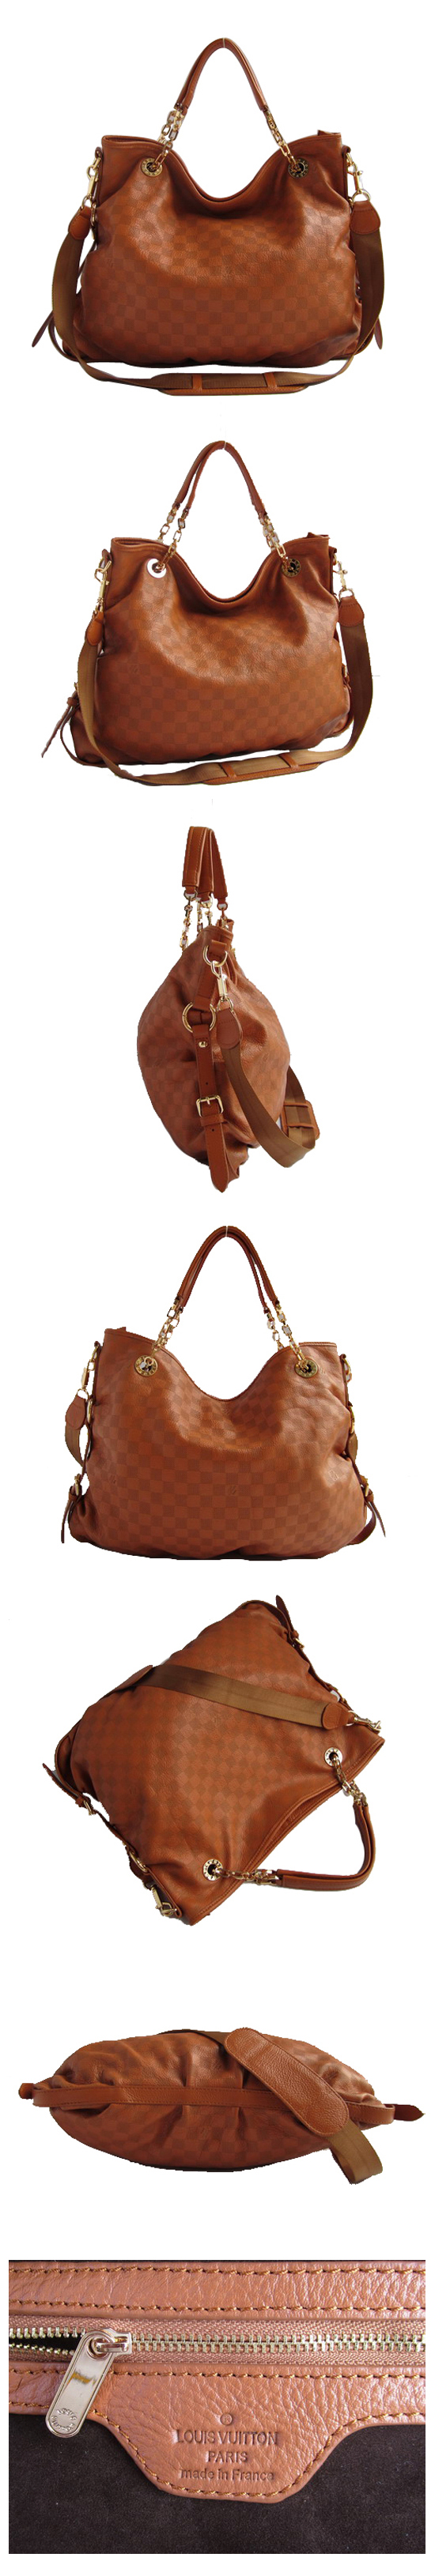 ブランド通販Louis Vuitton-ルイヴィトン-bag-N91952-brown激安屋-ブランドコピー